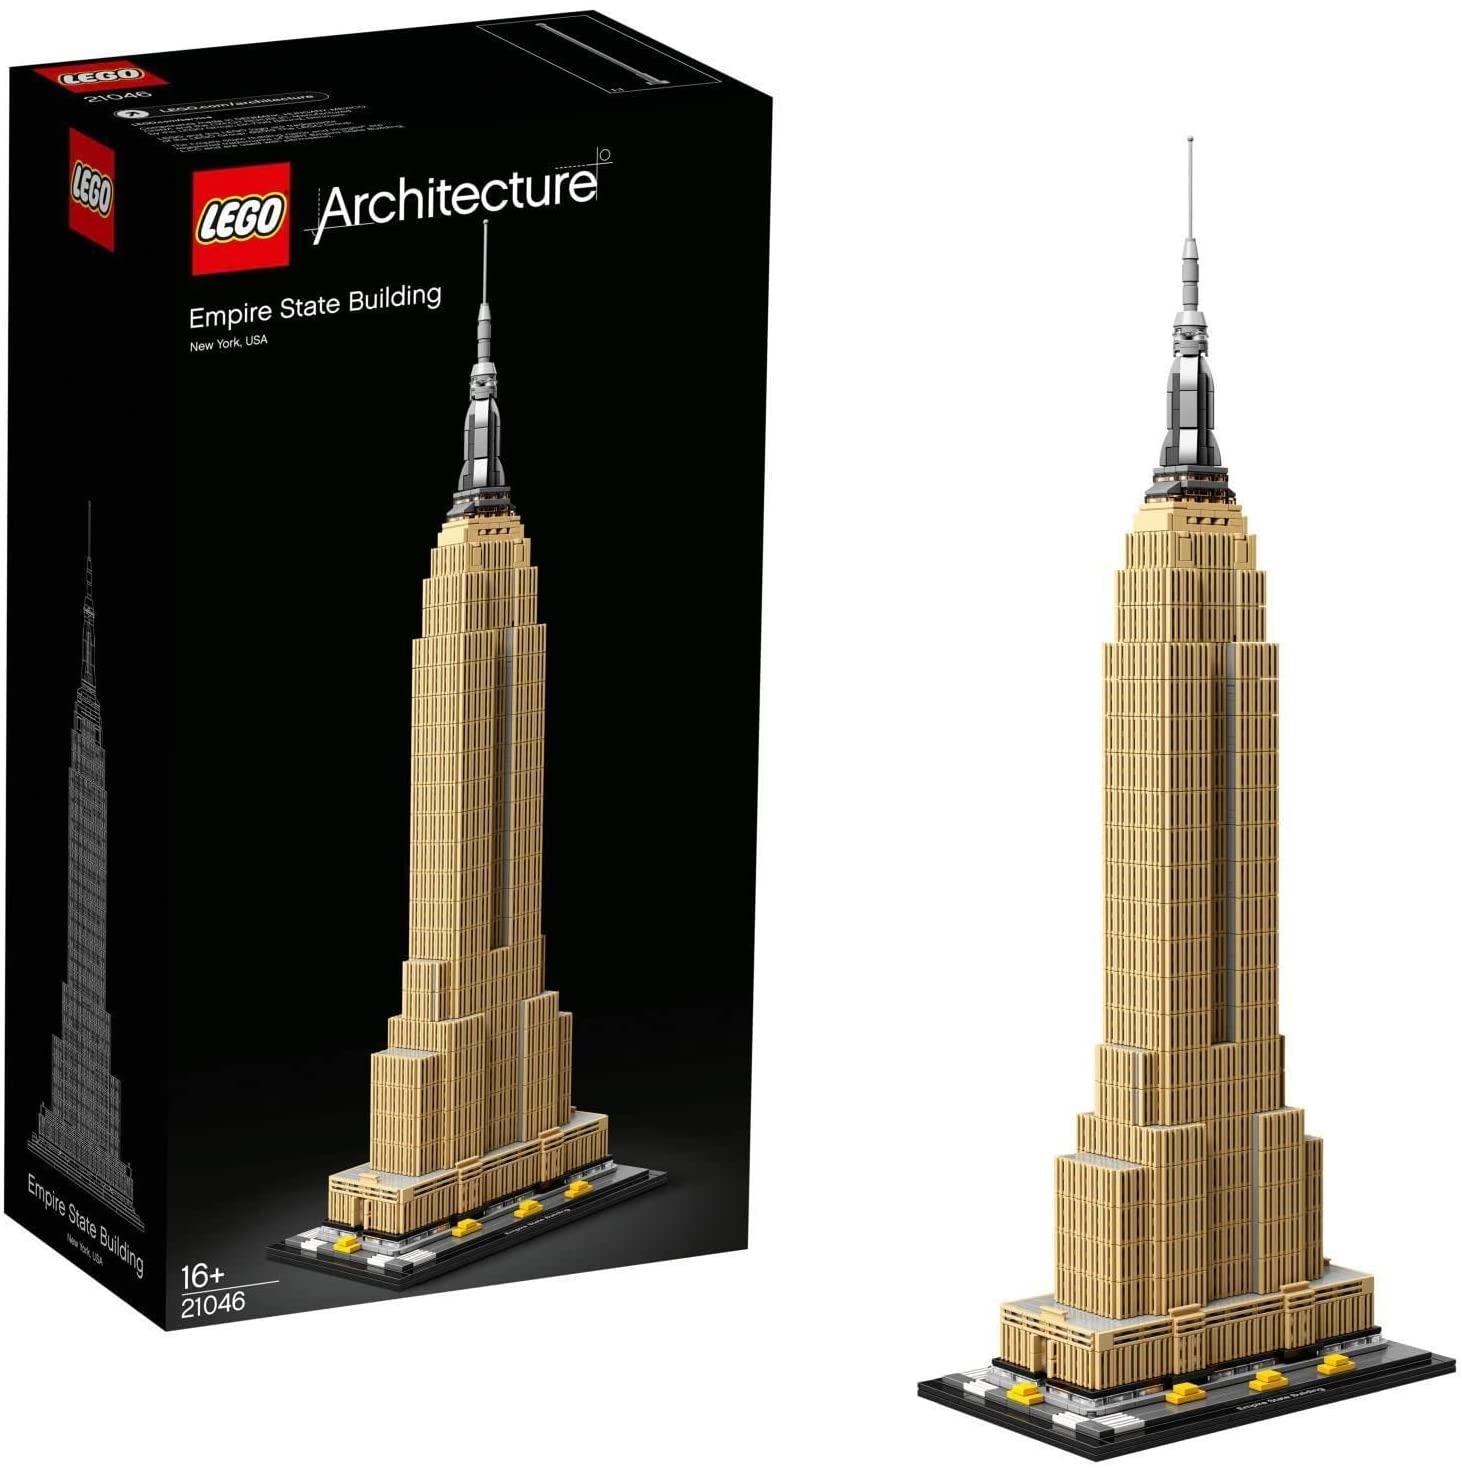 【折300+10%回饋】LEGO 樂高 Architecture 帝國大廈 21046 積木玩具